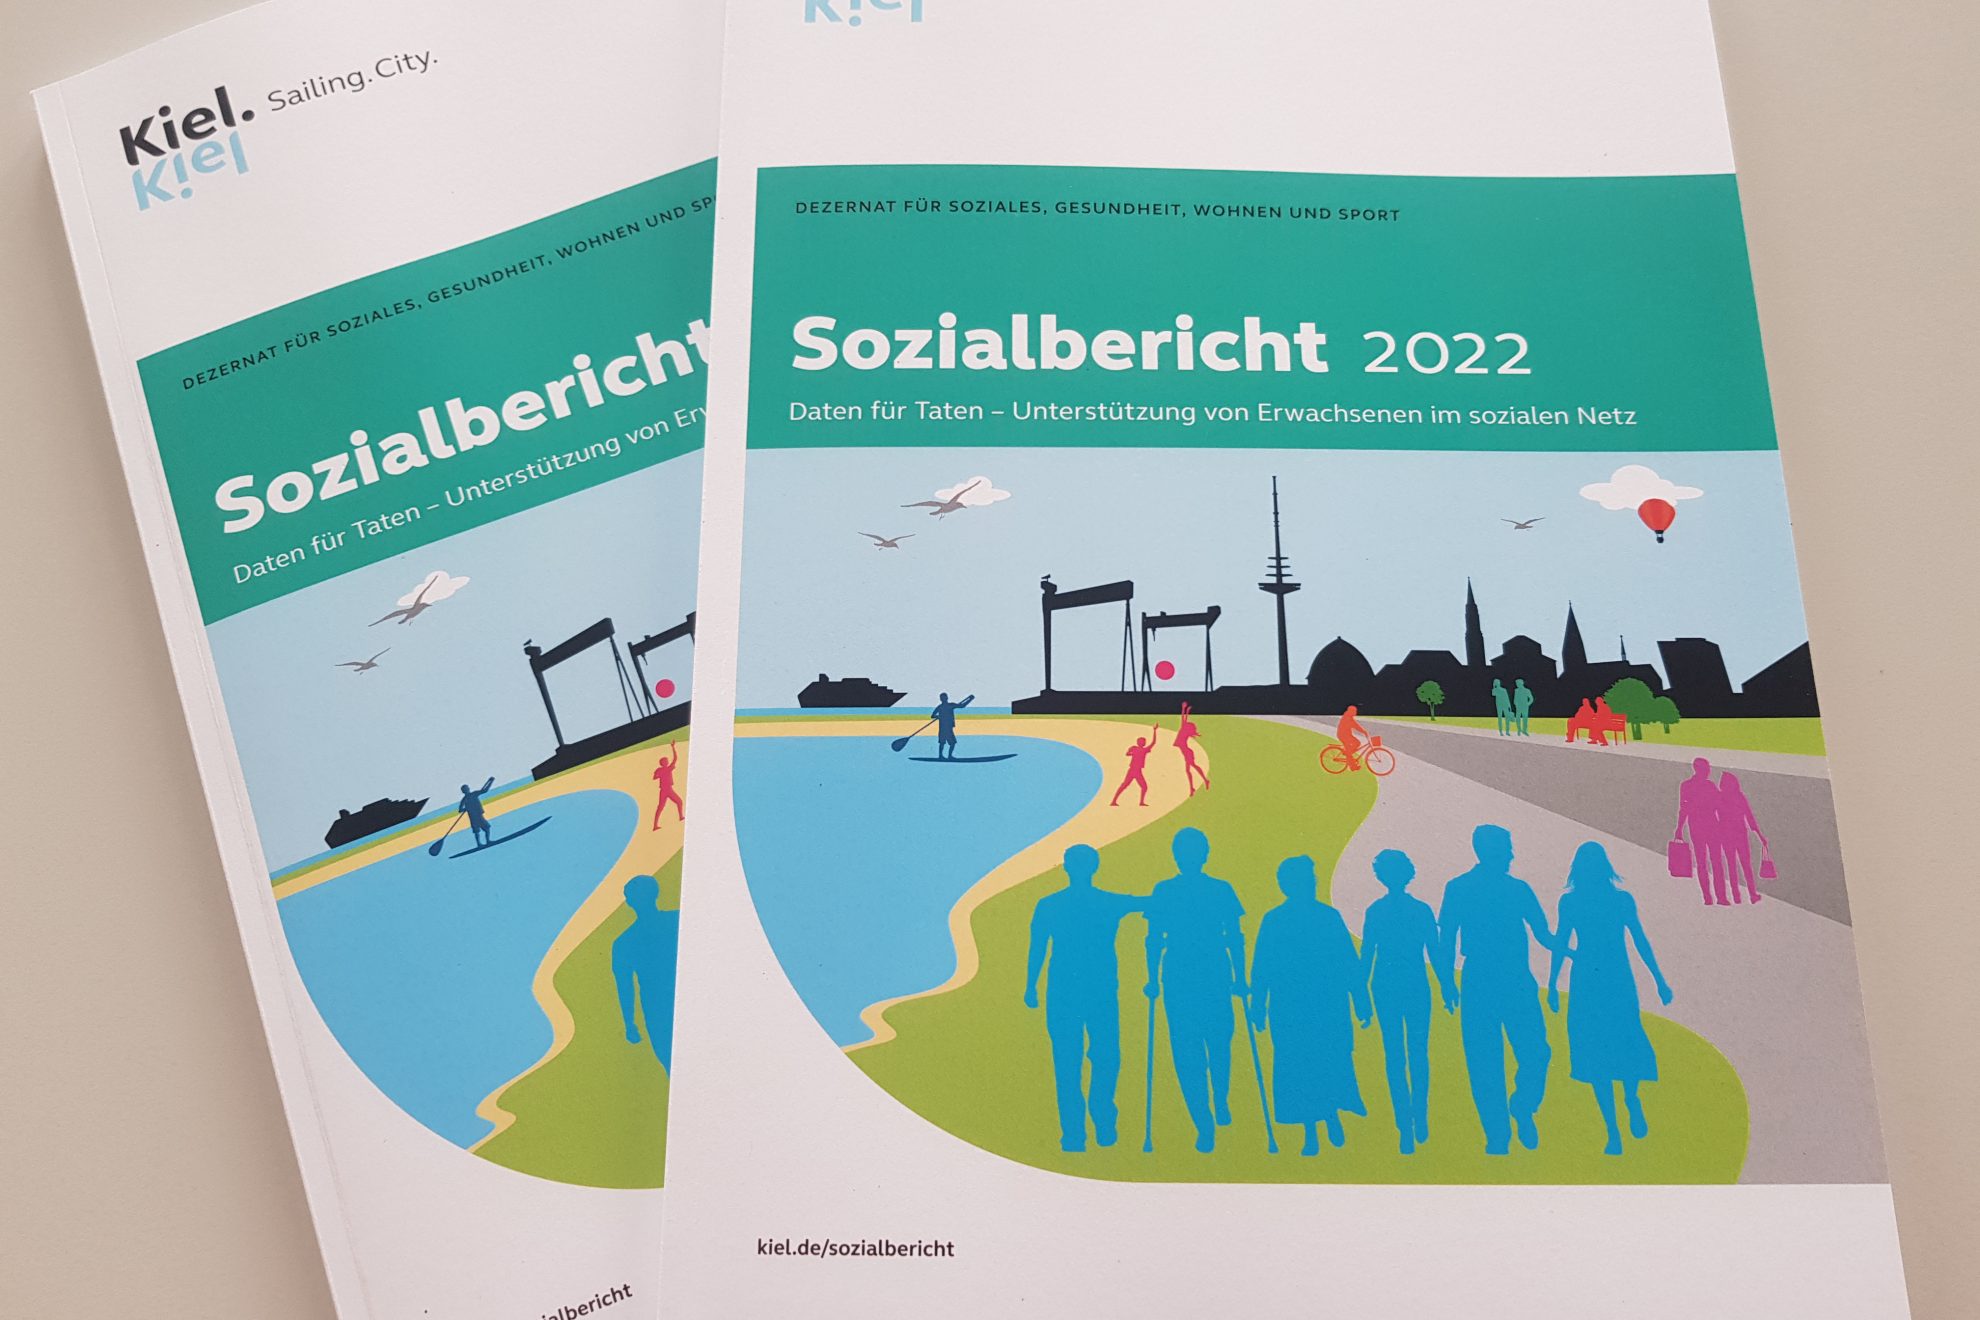 Zwei Broschüren, auf denen vorne steht "Sozialbericht 2022: Daten für Taten: Unterstützung von Erwachsenen im sozialen Netz". Links oben steht "Kiel. Sailing City".